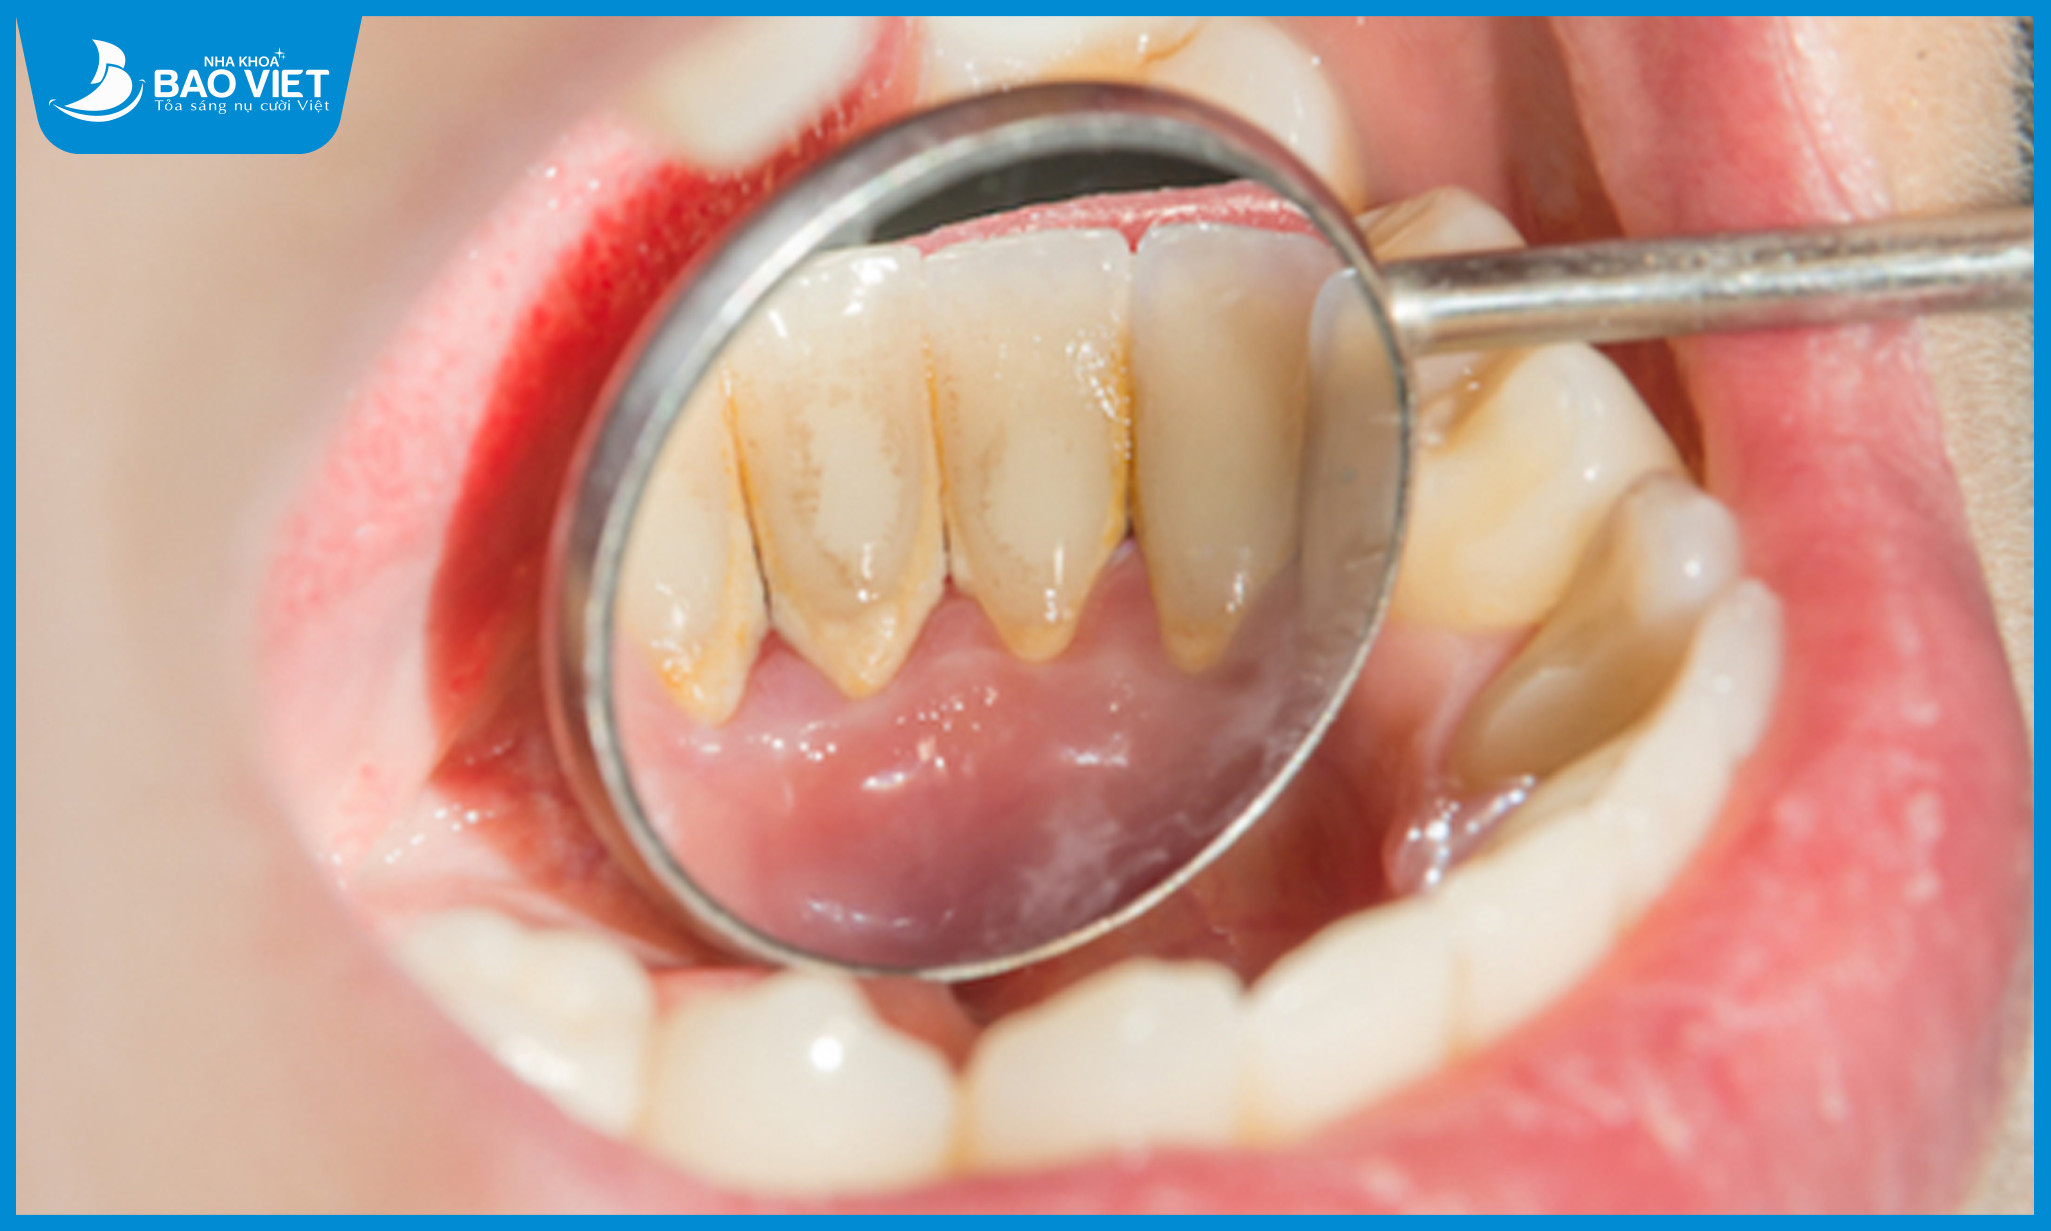 Vôi răng là những mảng bám cứng dính chặt vào bề mặt răng